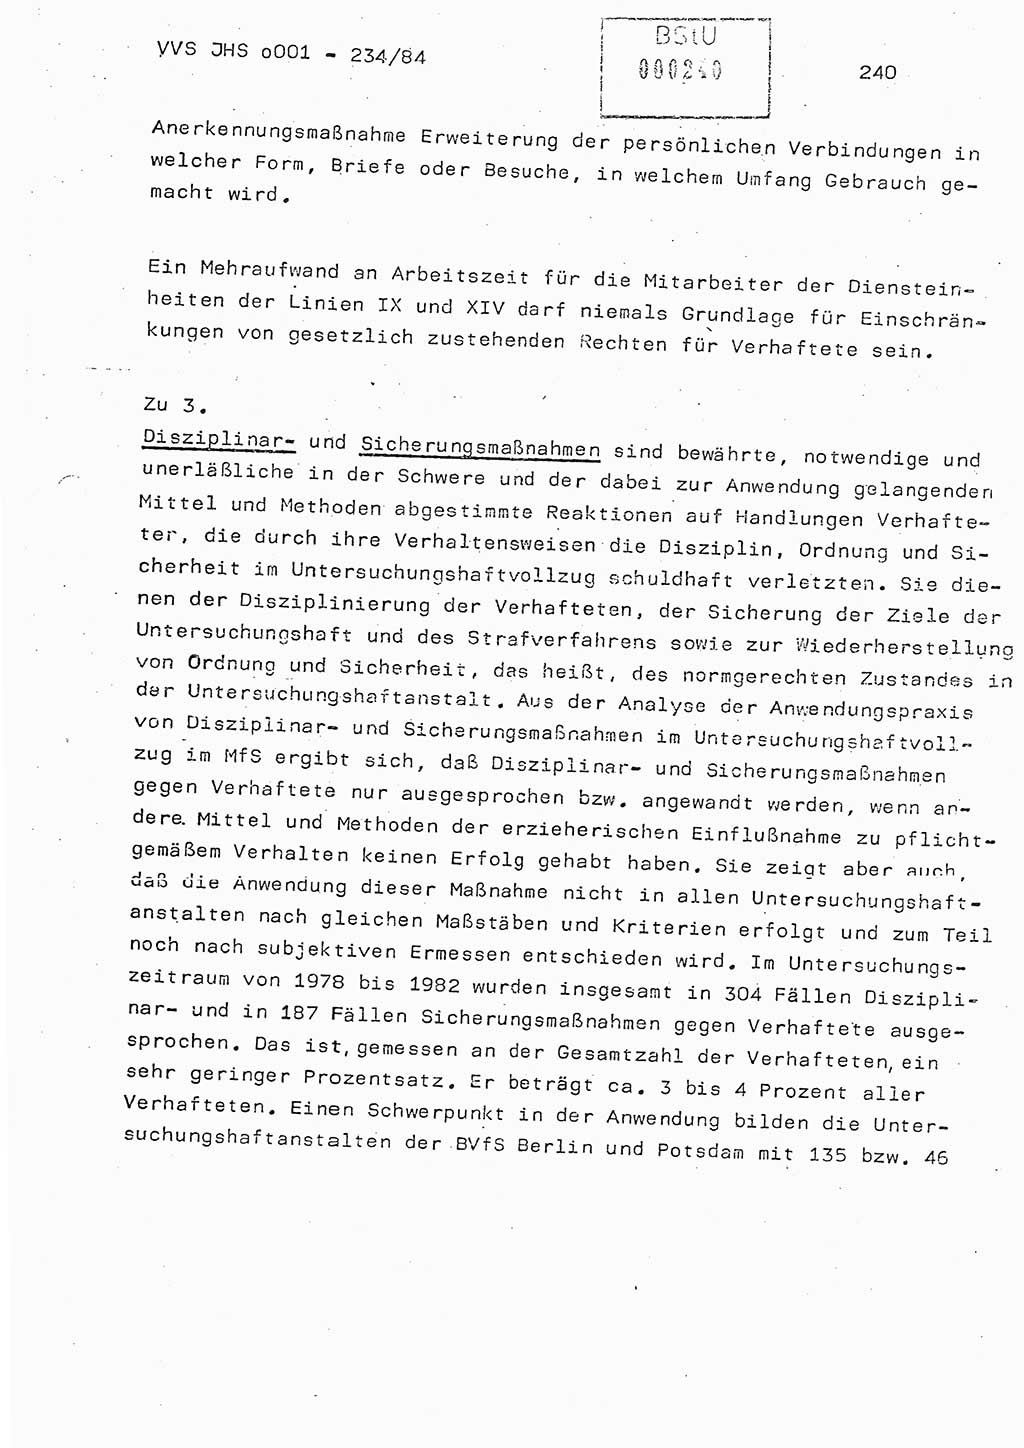 Dissertation Oberst Siegfried Rataizick (Abt. ⅩⅣ), Oberstleutnant Volkmar Heinz (Abt. ⅩⅣ), Oberstleutnant Werner Stein (HA Ⅸ), Hauptmann Heinz Conrad (JHS), Ministerium für Staatssicherheit (MfS) [Deutsche Demokratische Republik (DDR)], Juristische Hochschule (JHS), Vertrauliche Verschlußsache (VVS) o001-234/84, Potsdam 1984, Seite 240 (Diss. MfS DDR JHS VVS o001-234/84 1984, S. 240)